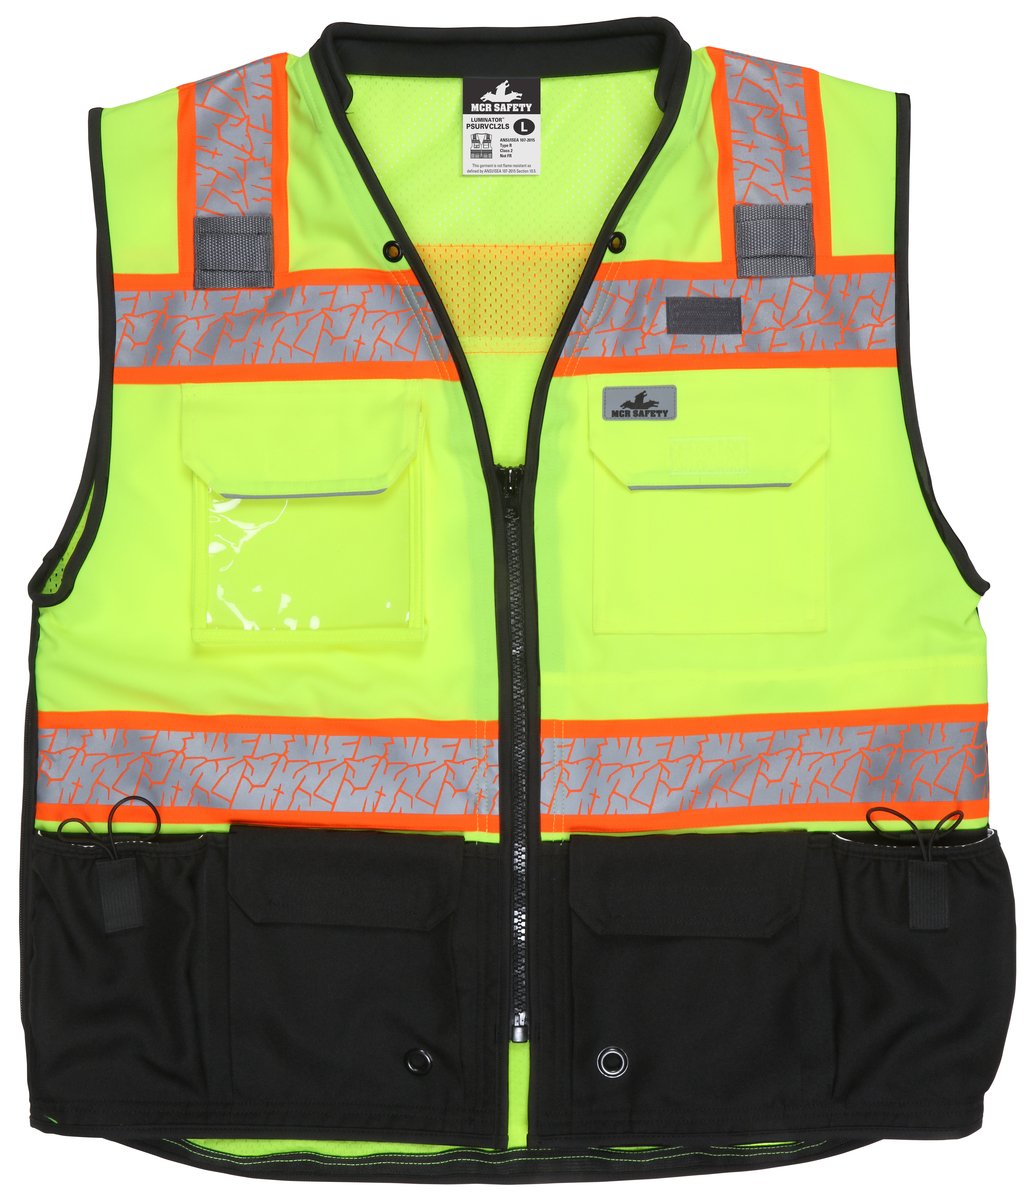 Hi Vis Safety Vests, ANSI Reflective Vests